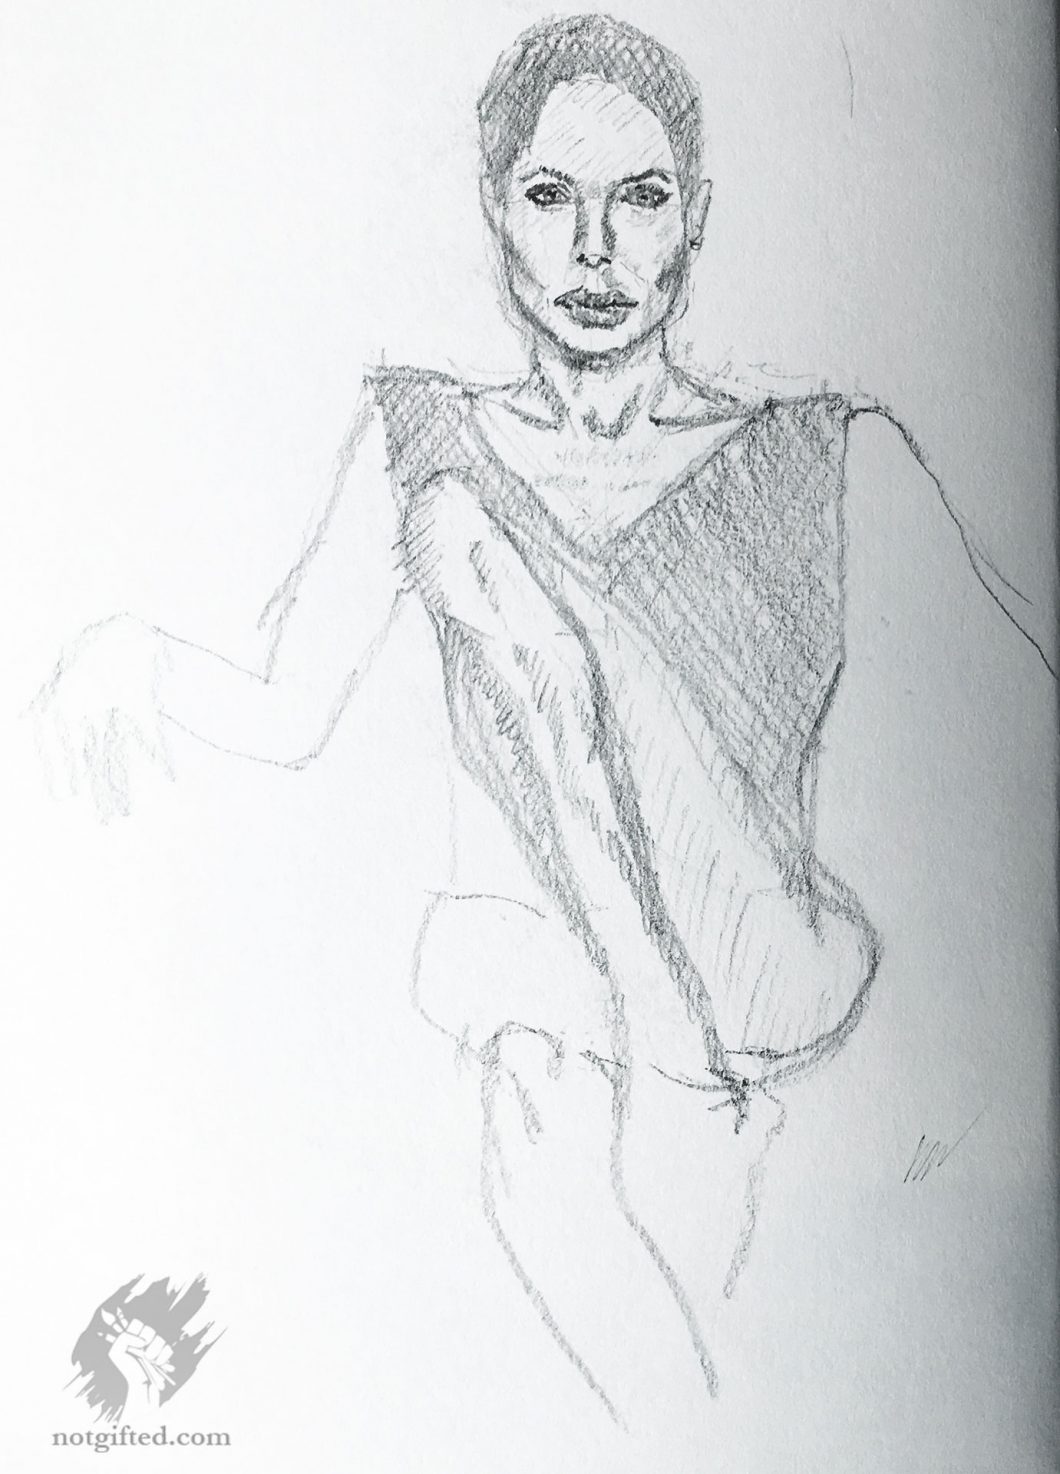 Model's legs - drawing